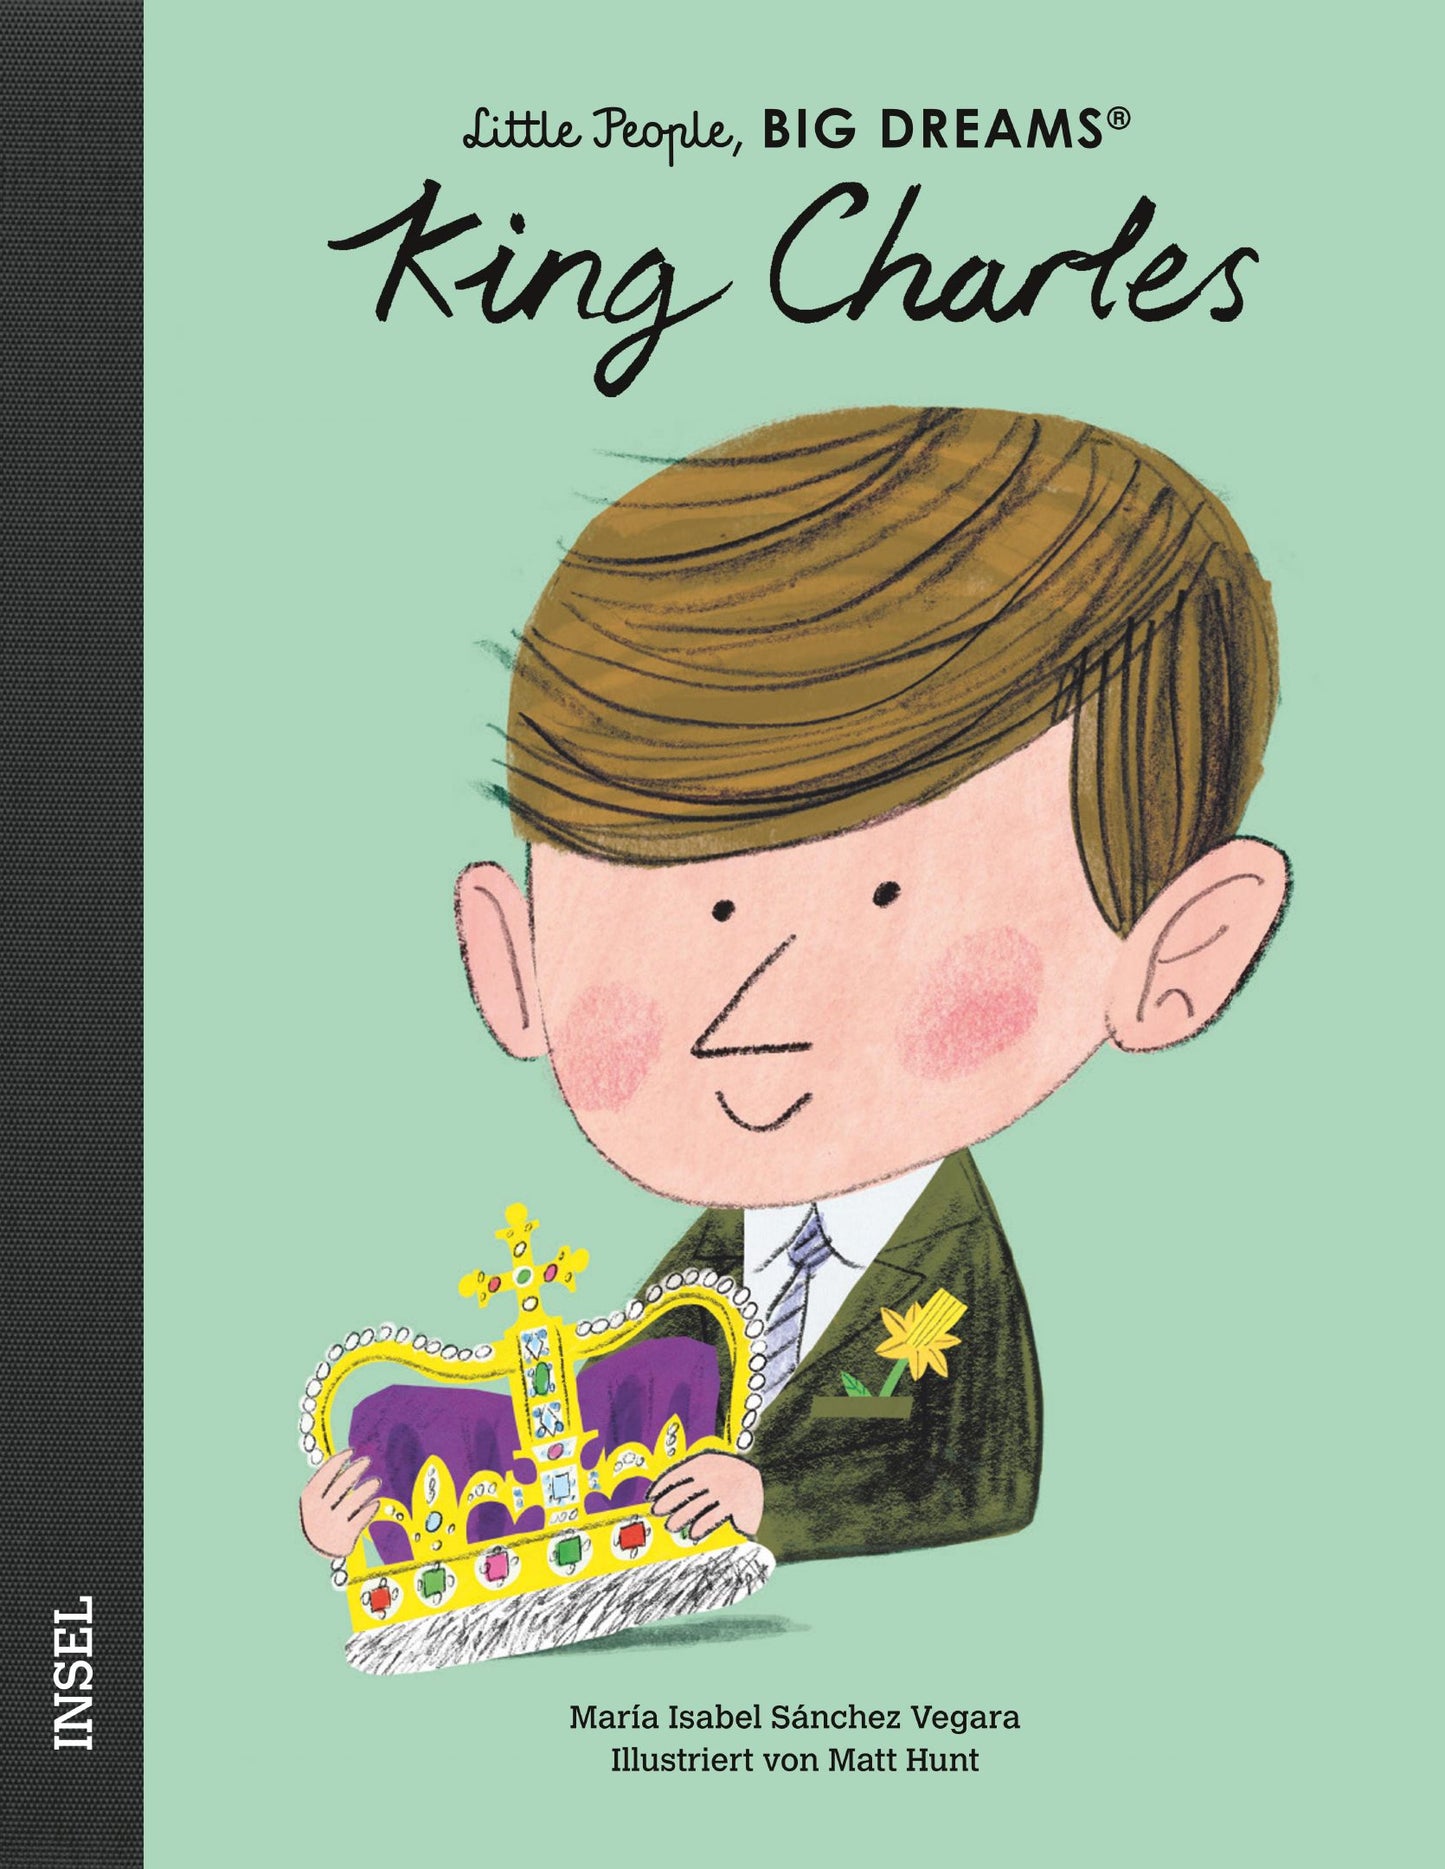 Little People, Big Dreams, King Charles